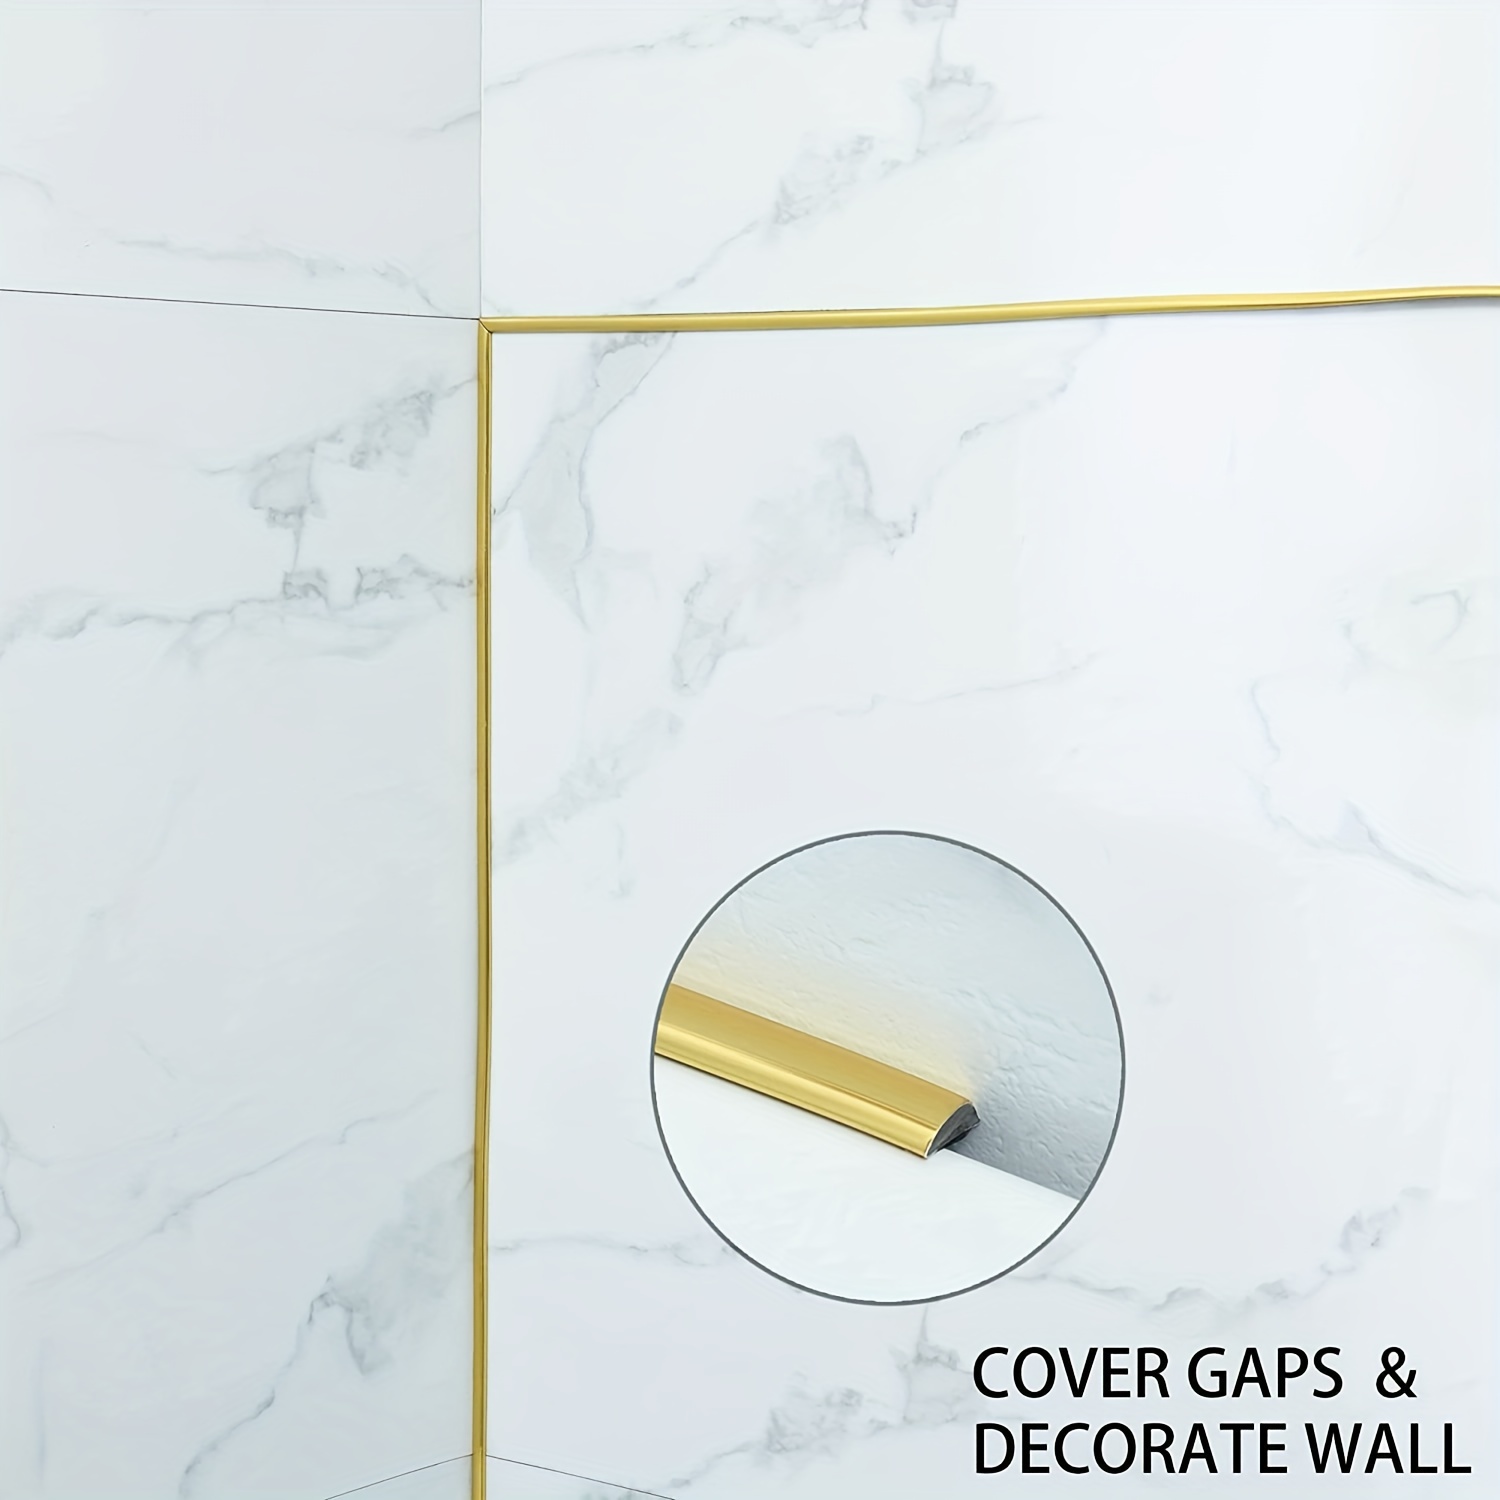 Leisten & Wandleisten, 5M Gold metallisierte spiegelähnliche Oberfläche,  Edelstahl Dekorative Zierleiste für Wand, Spiegel, Möbeldekor (20MM)